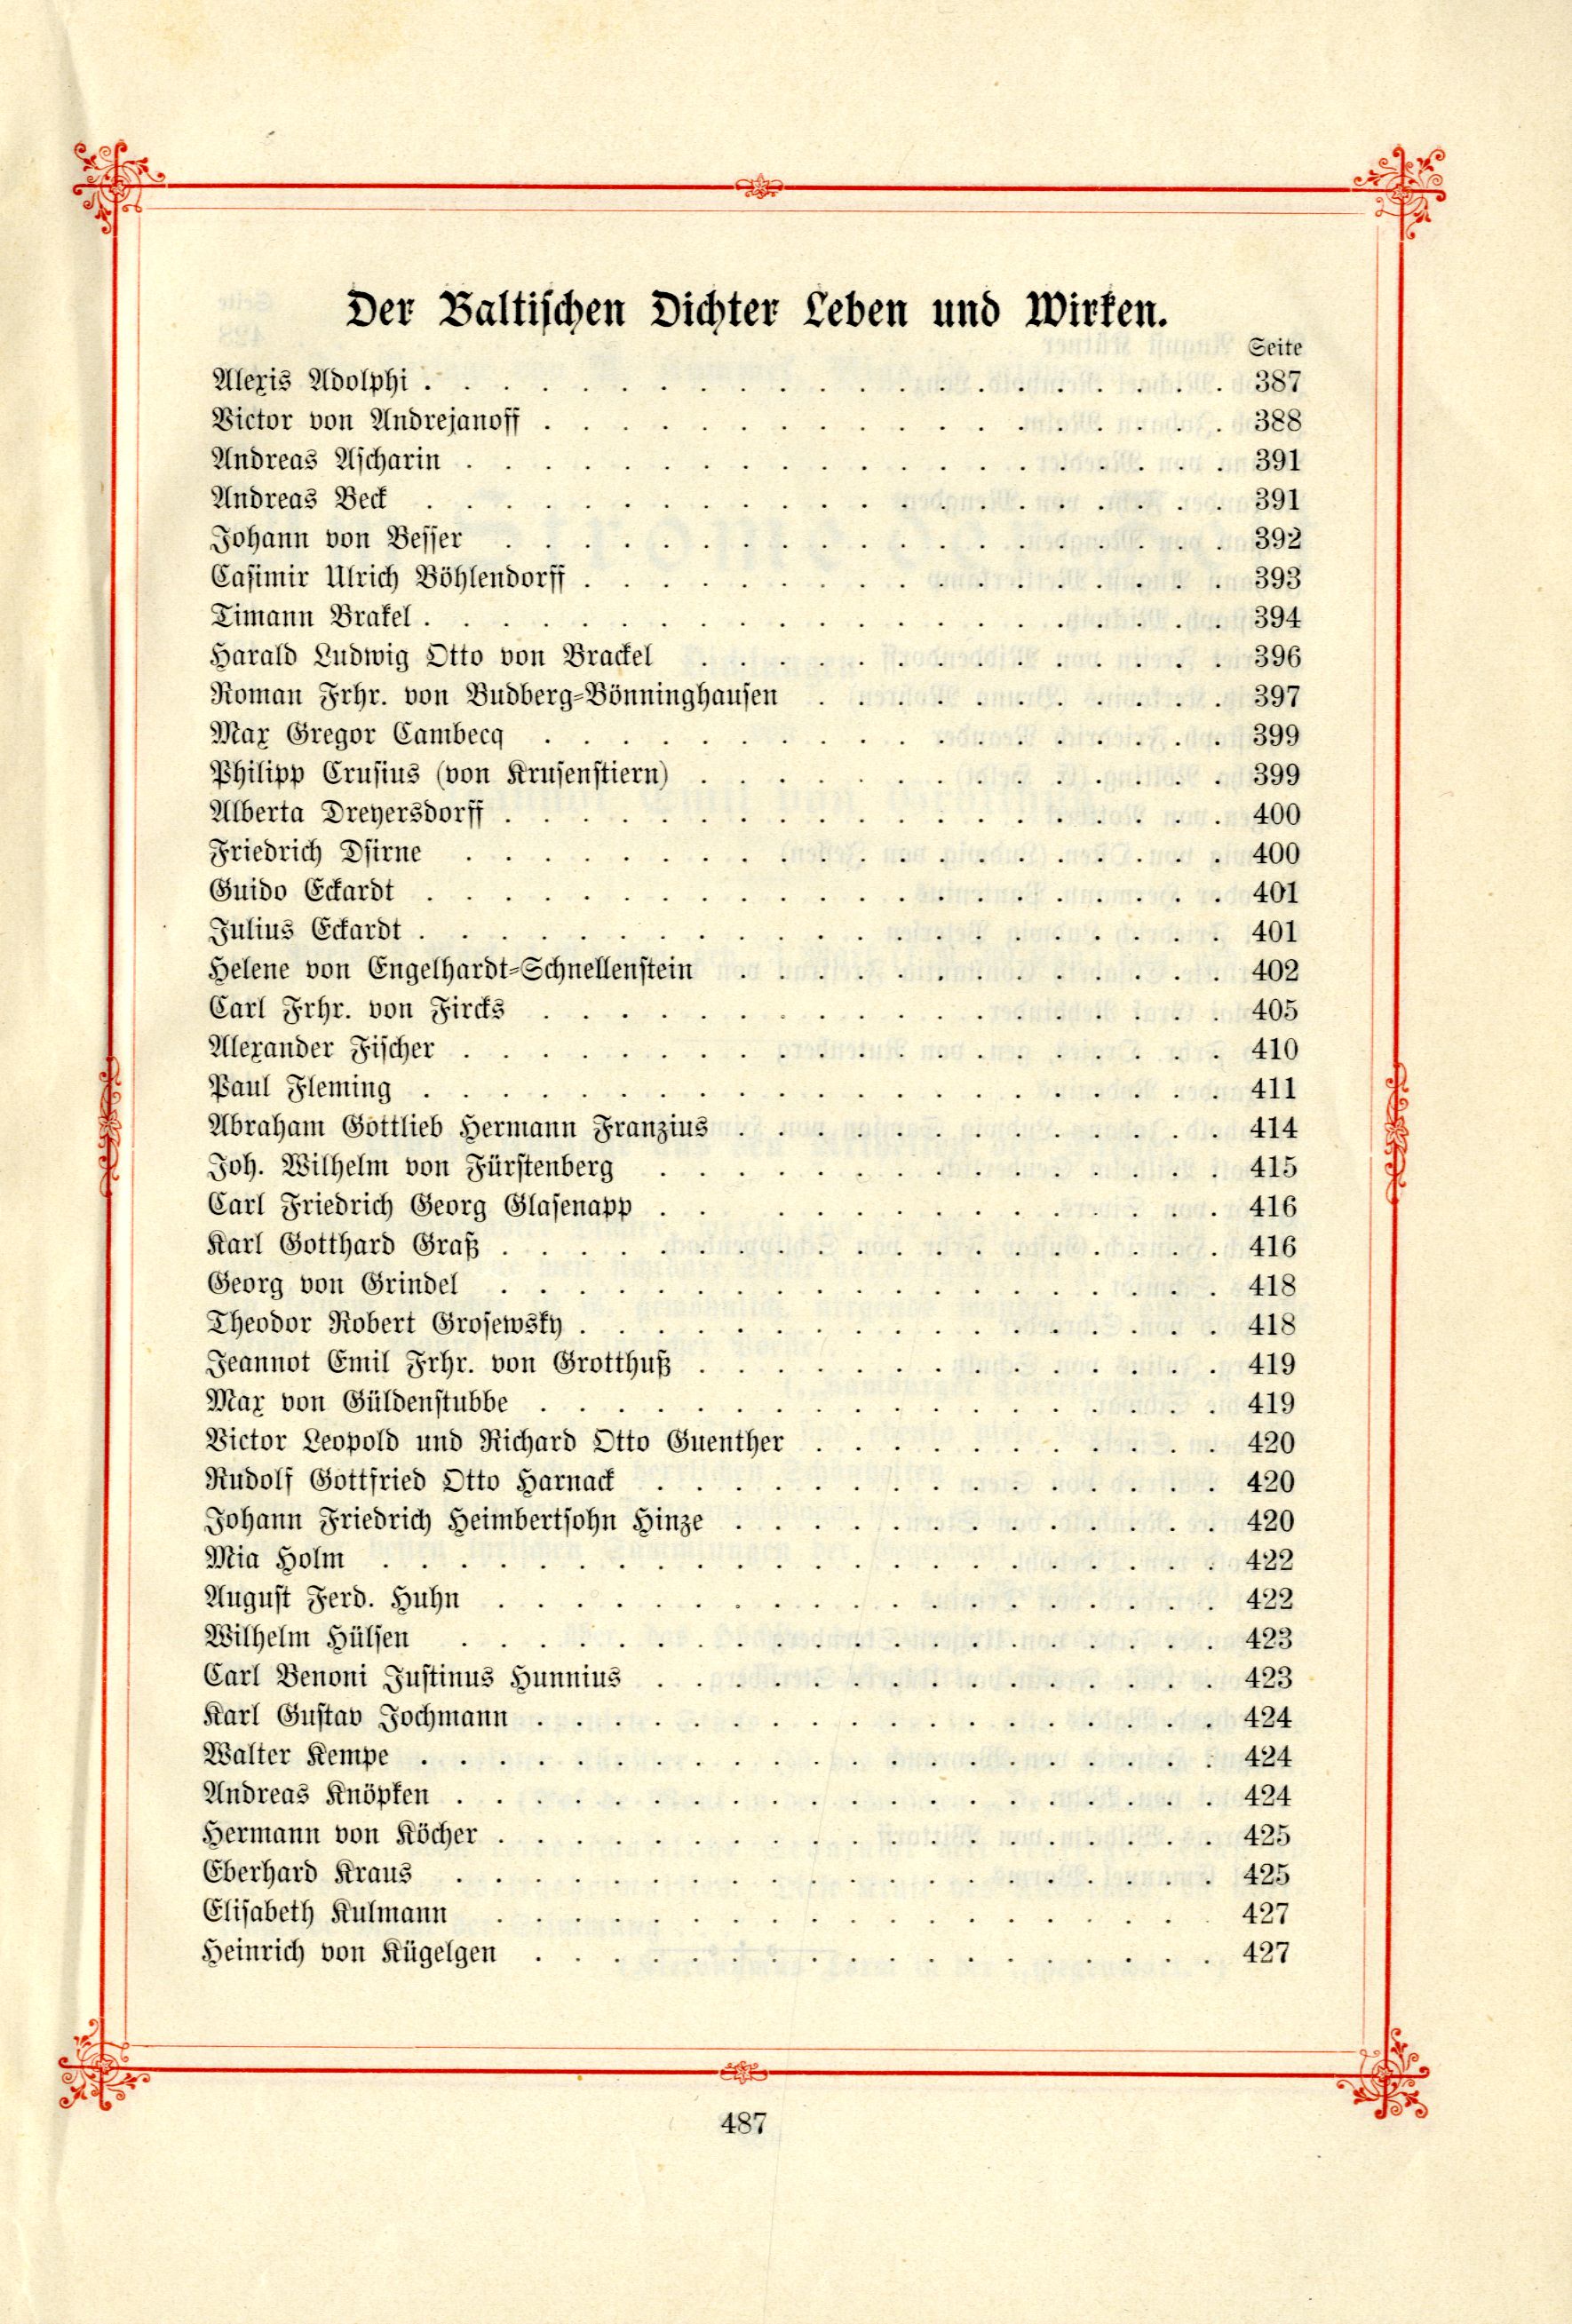 Das Baltische Dichterbuch (1895) | 533. (487) Table of contents